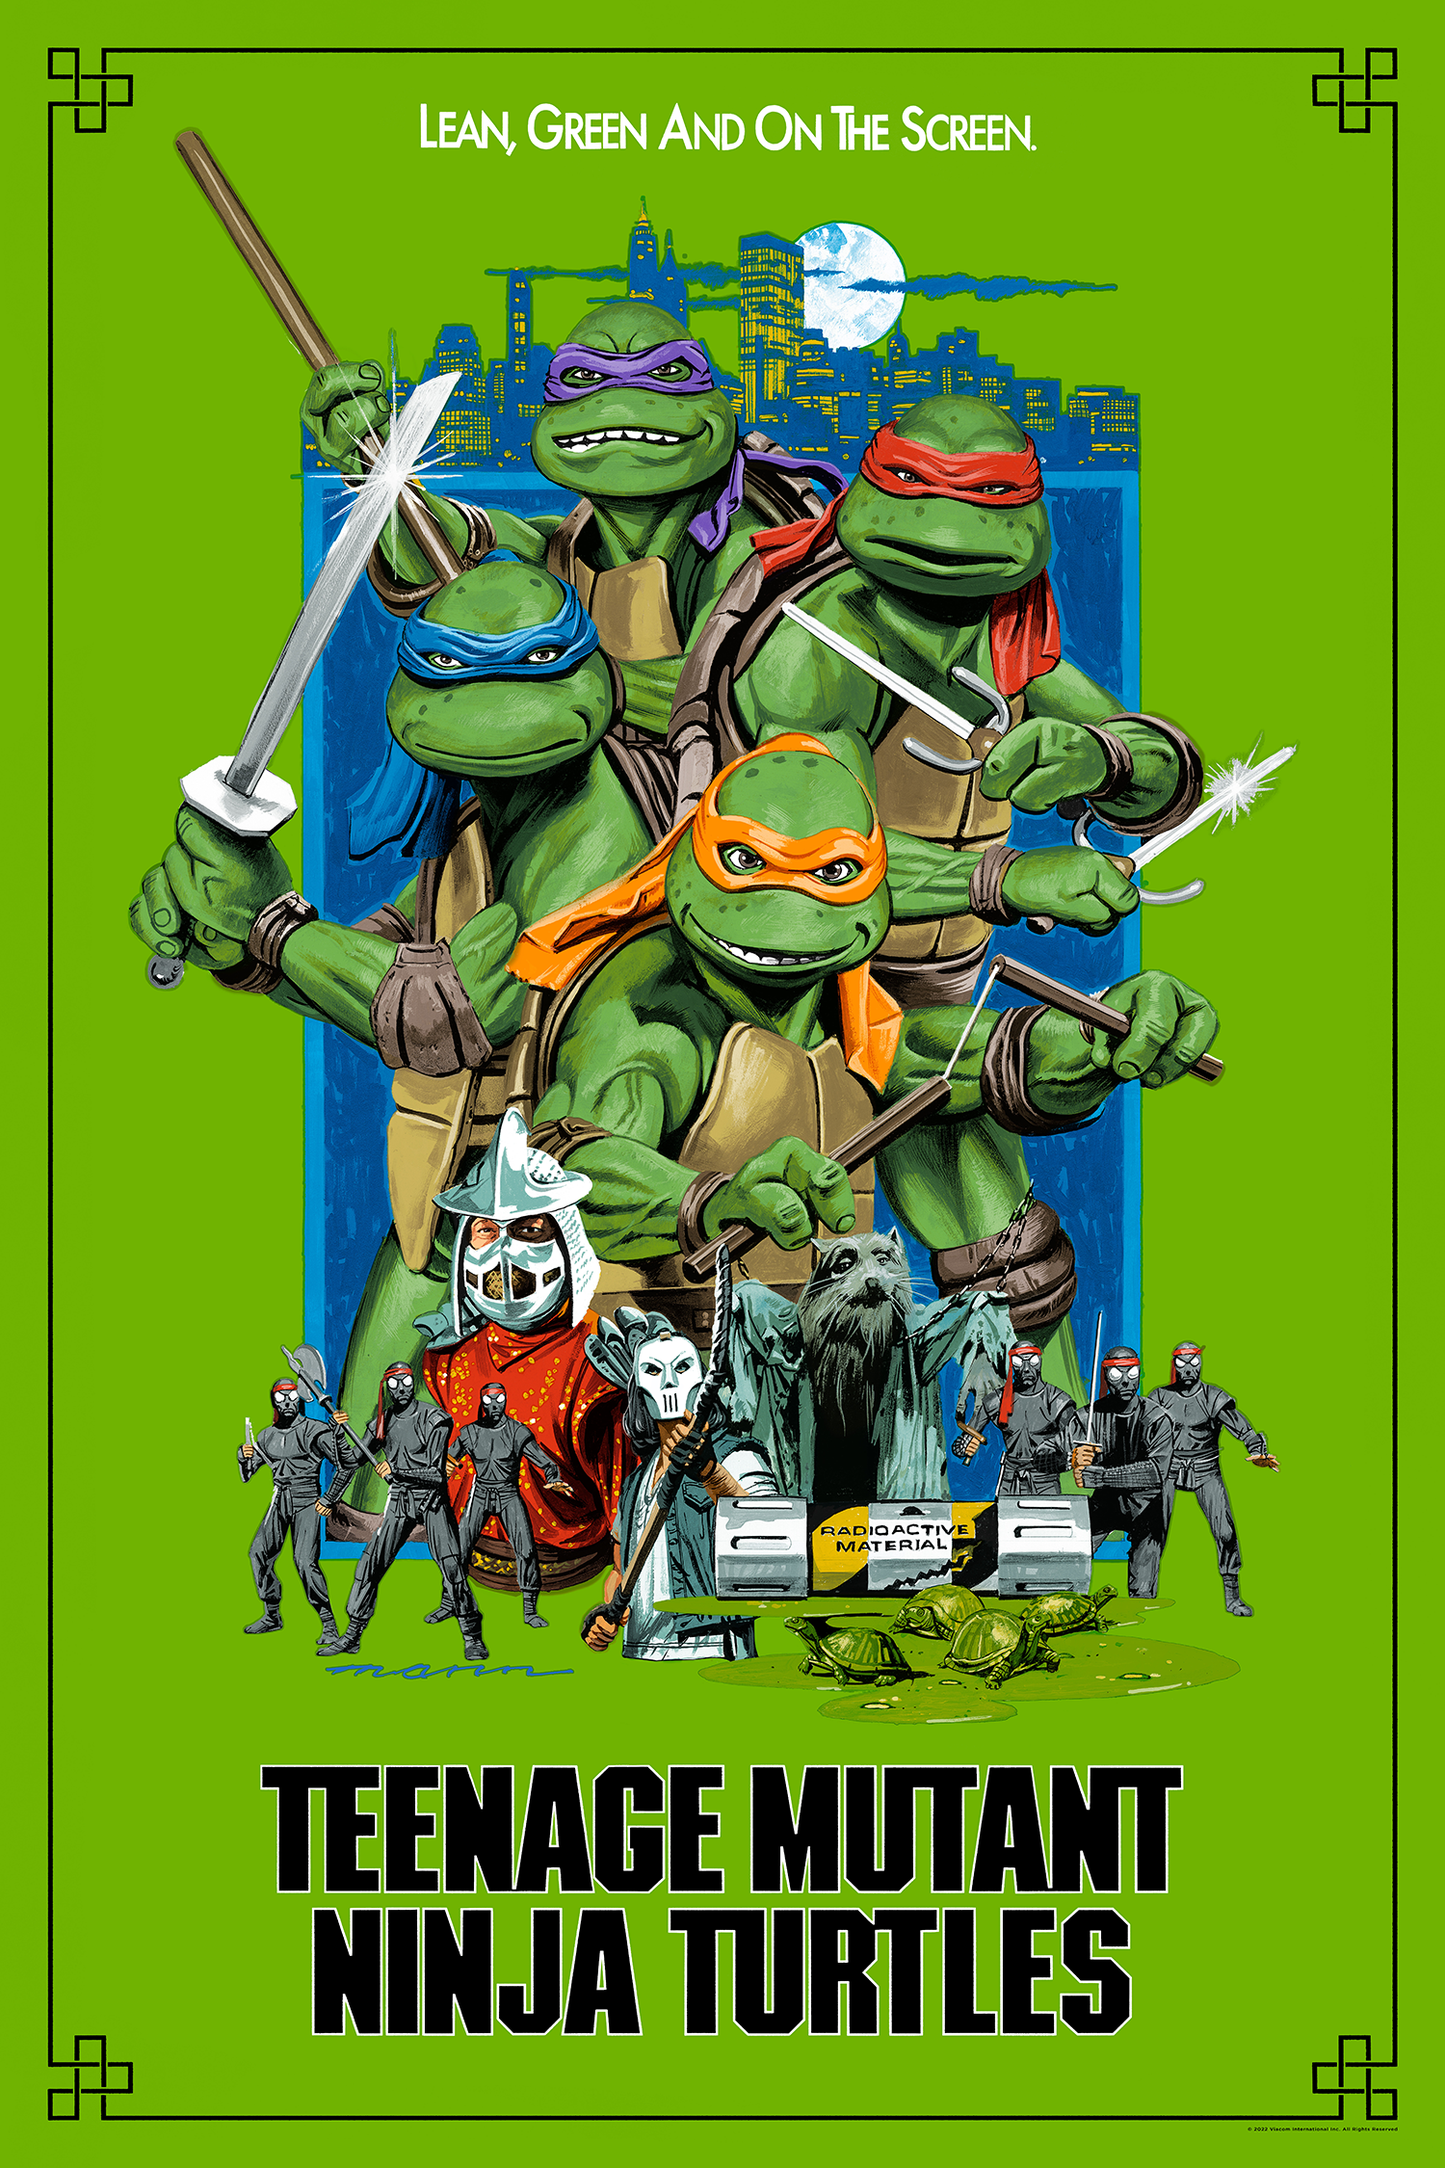 Paul Mann "Teenage Mutant Ninja Turtles" Classic Green Variant